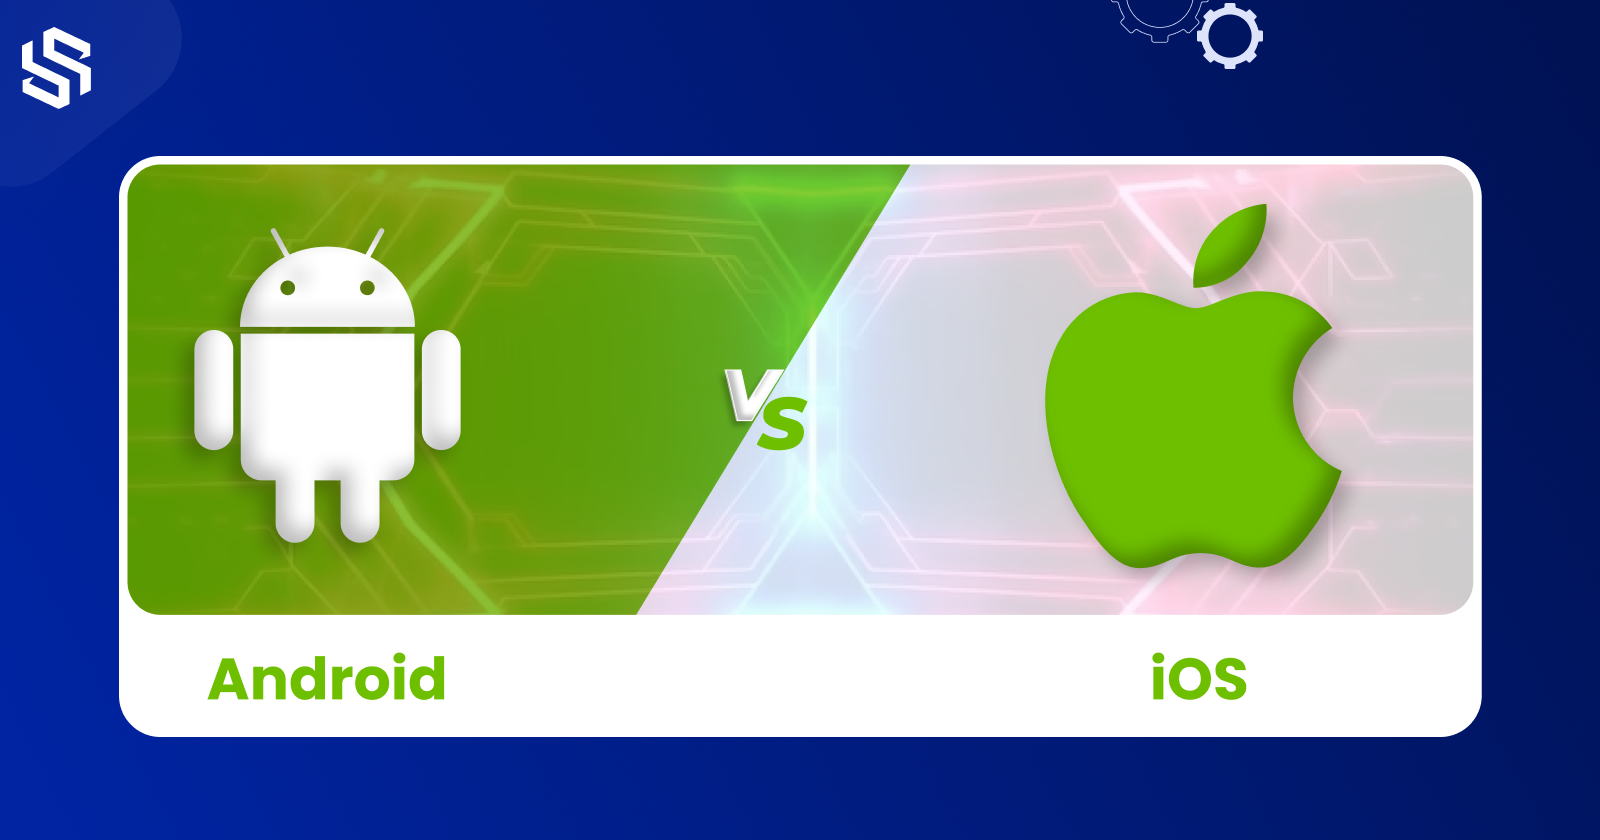 Android vs iOS development